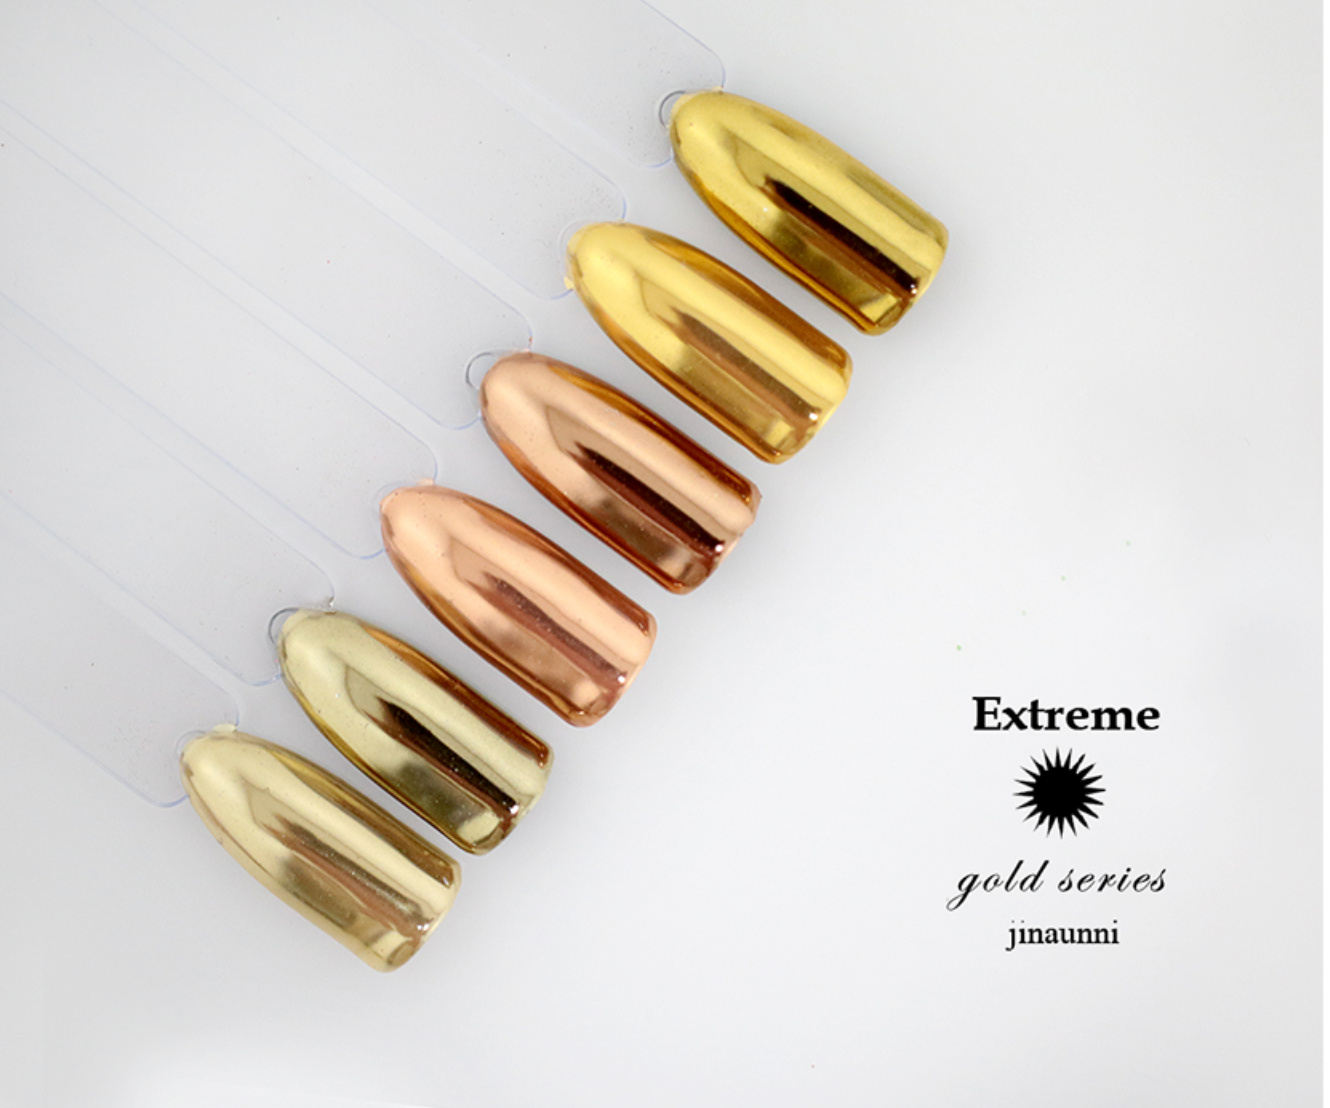 JINAUNNI Extreme gold chrome powder - 3 types